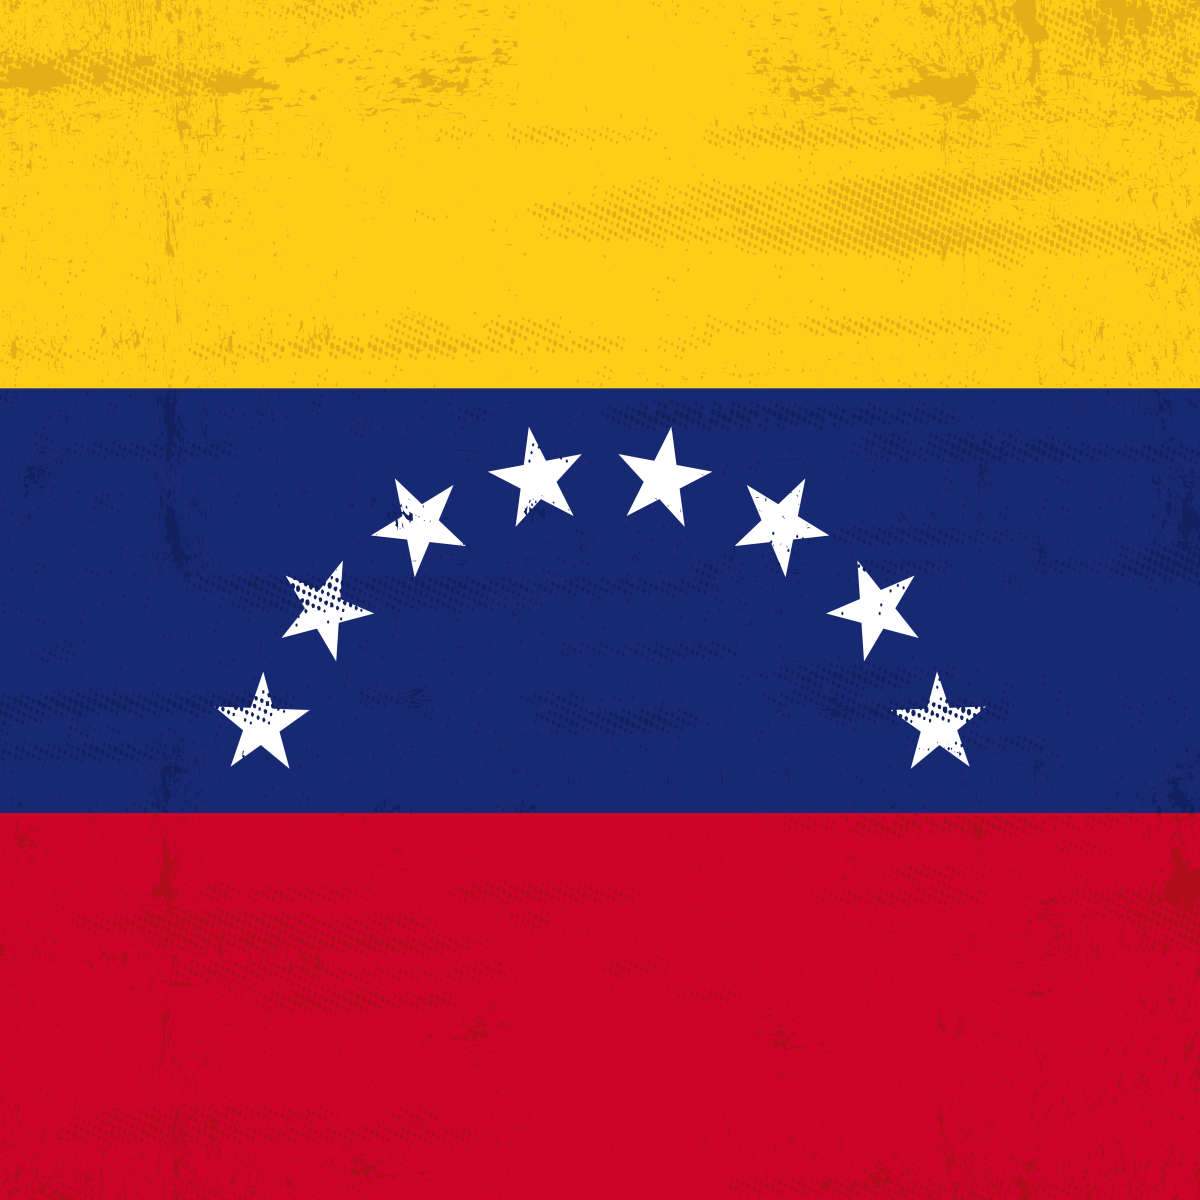 Venezuela Flags